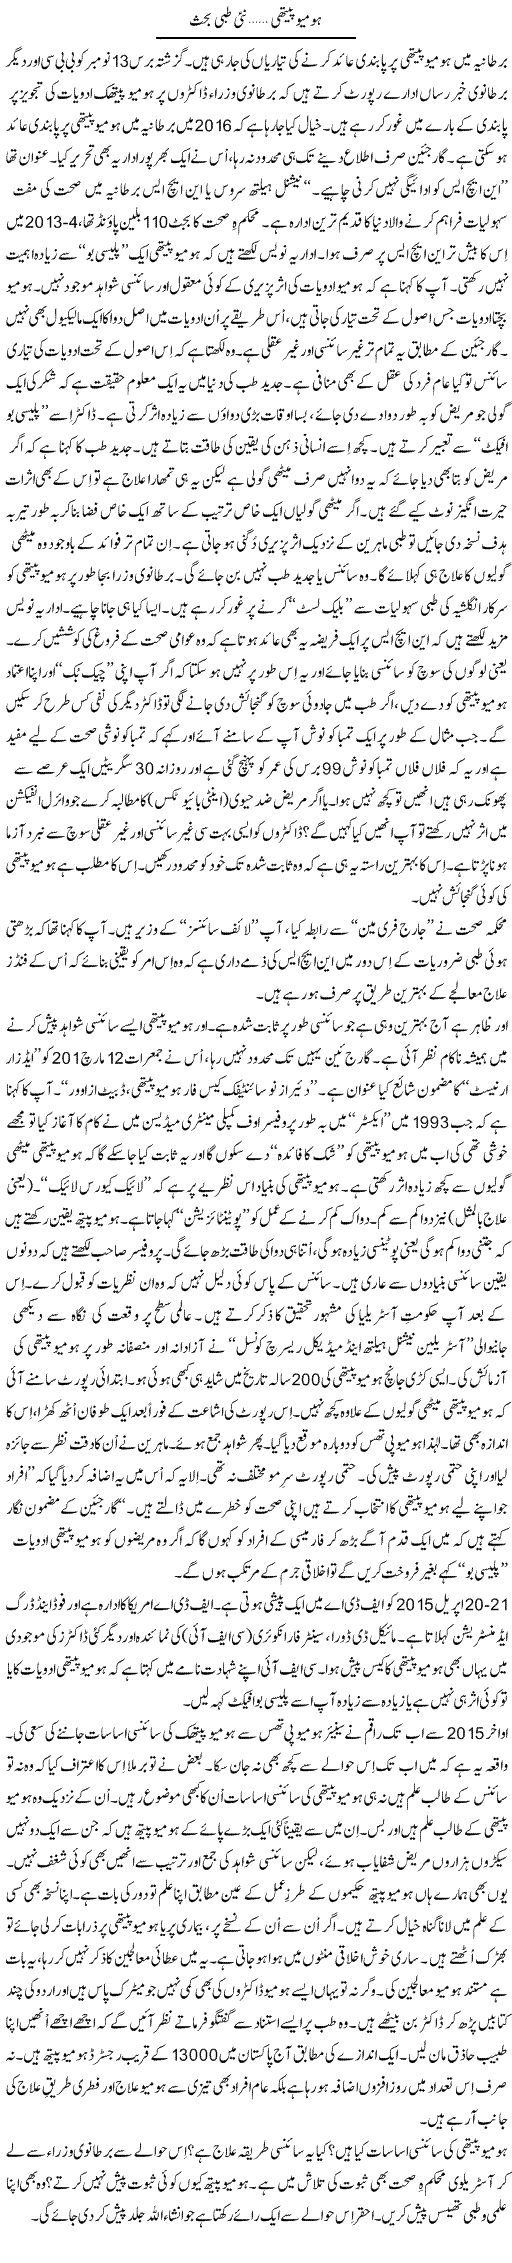 Homeo Pathi, Nai Tibbi Behas | Shaikh Jaber | Daily Urdu Columns